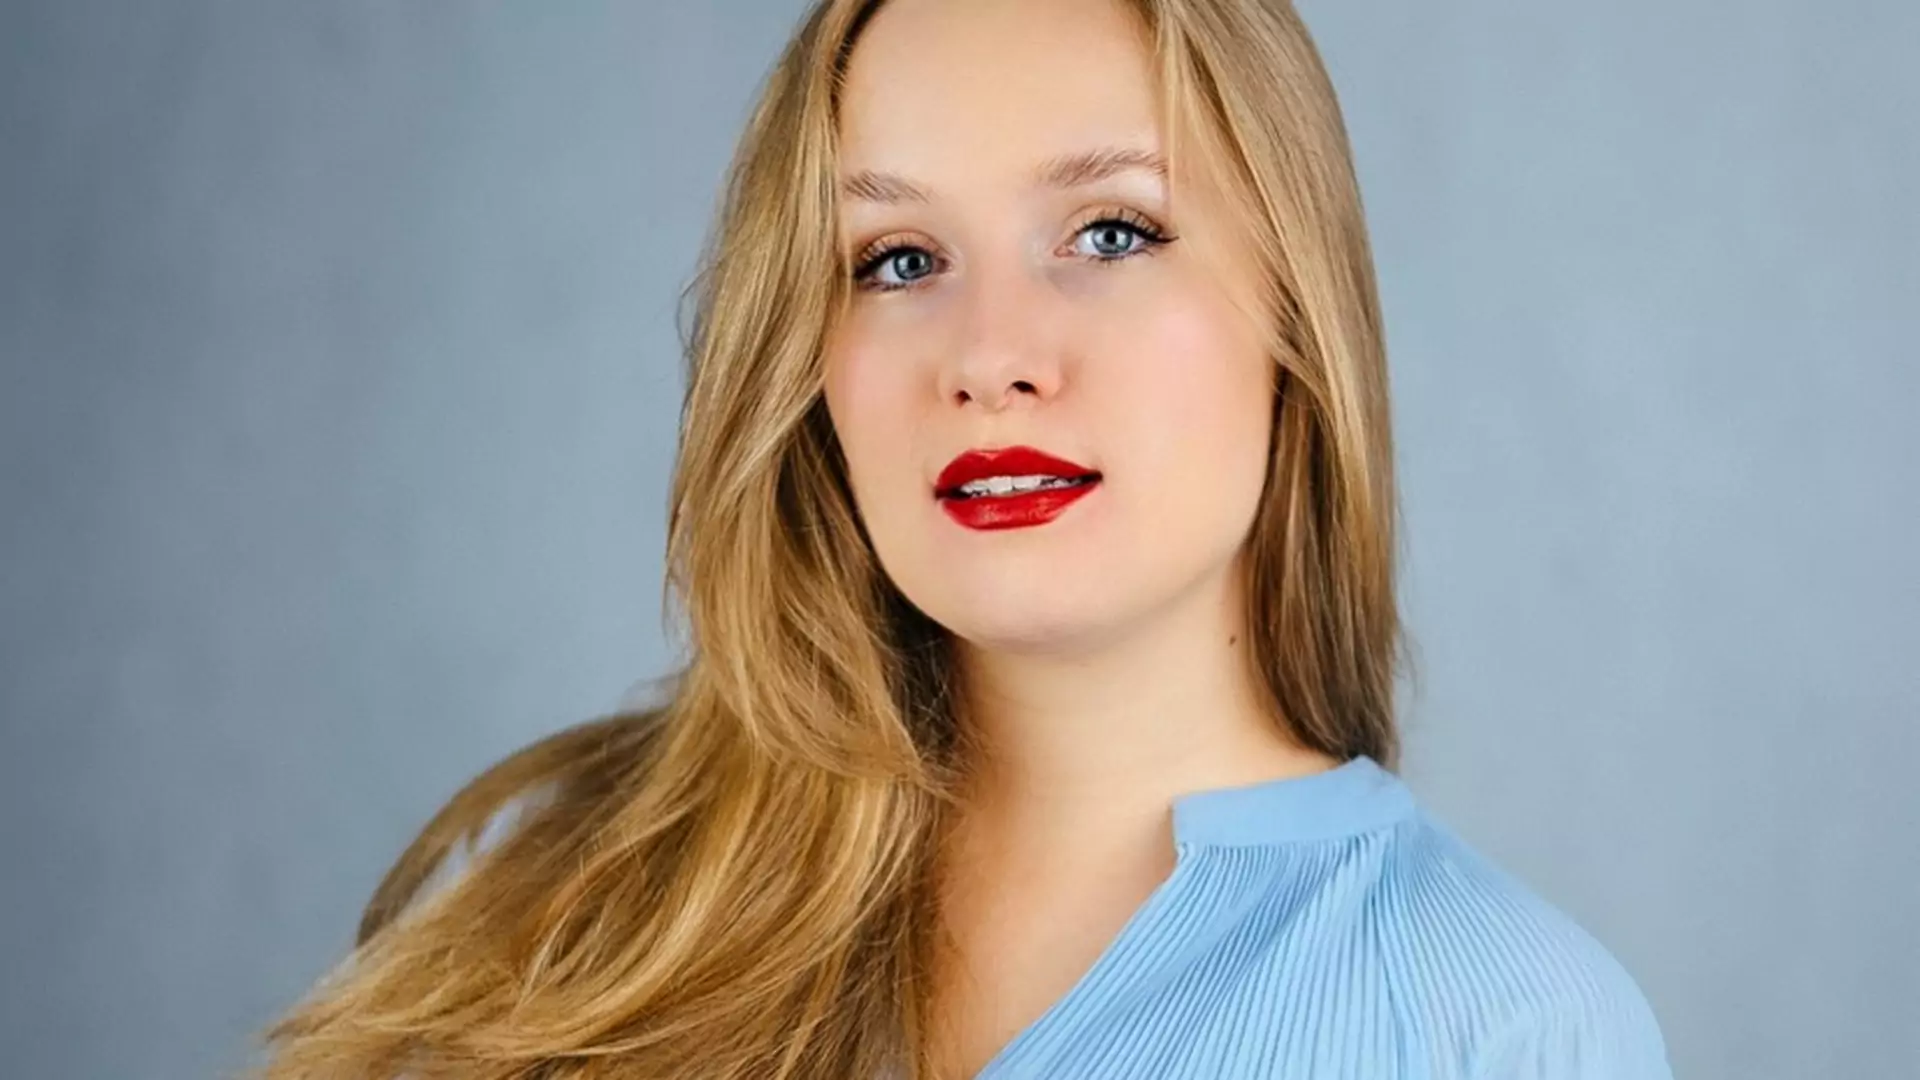 25-latka o włos od wejścia do Sejmu. "To dopiero początek rewolucji" – mówi Paulina Filipowicz